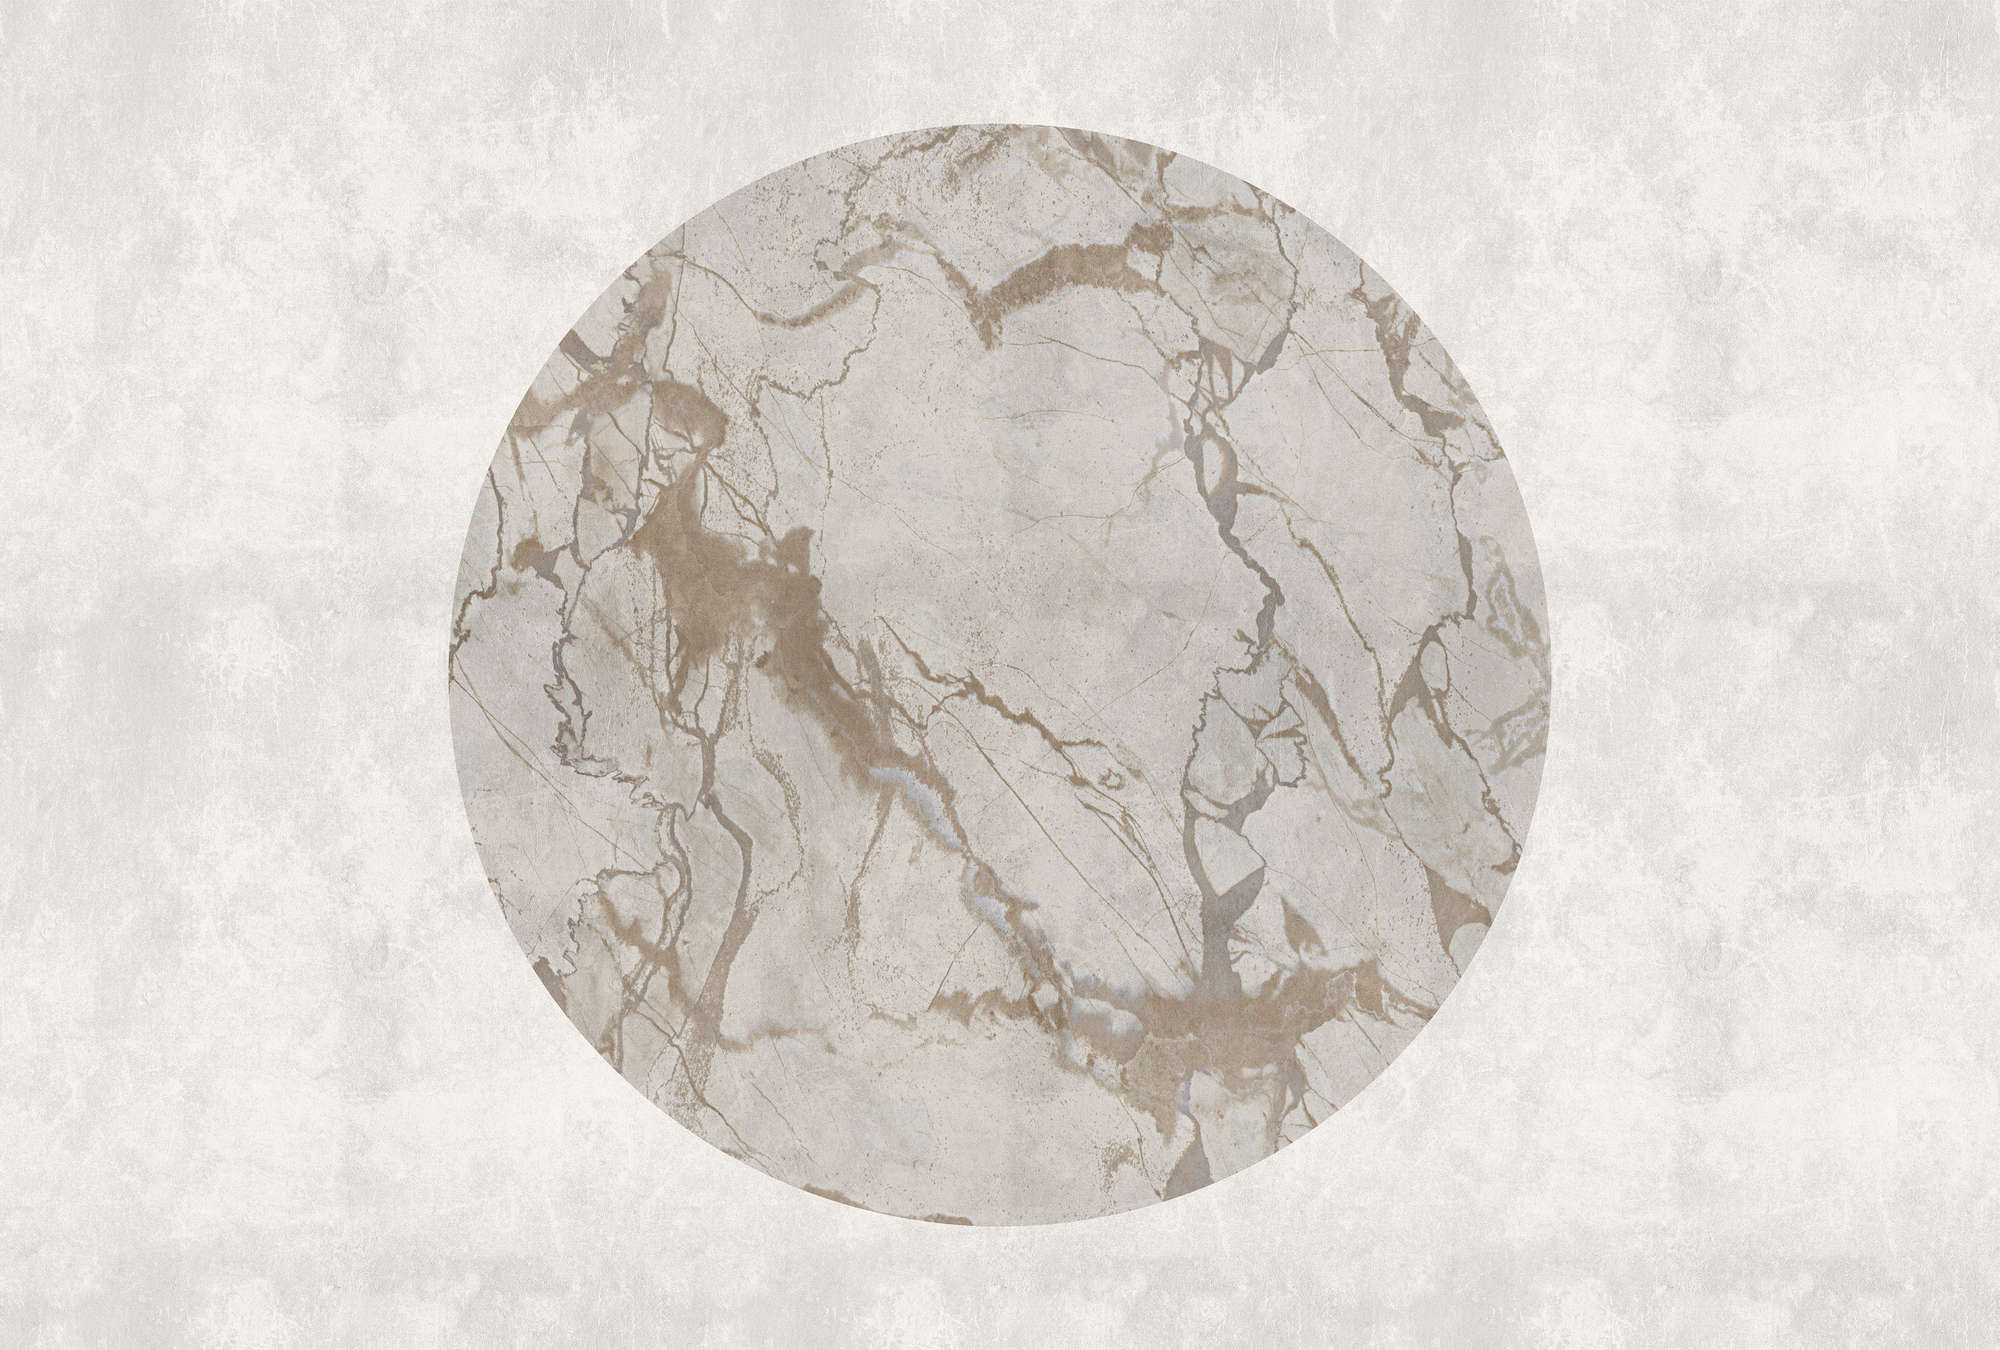             Mercurio 2 - Muurschildering Greige stone look met marmereffect
        